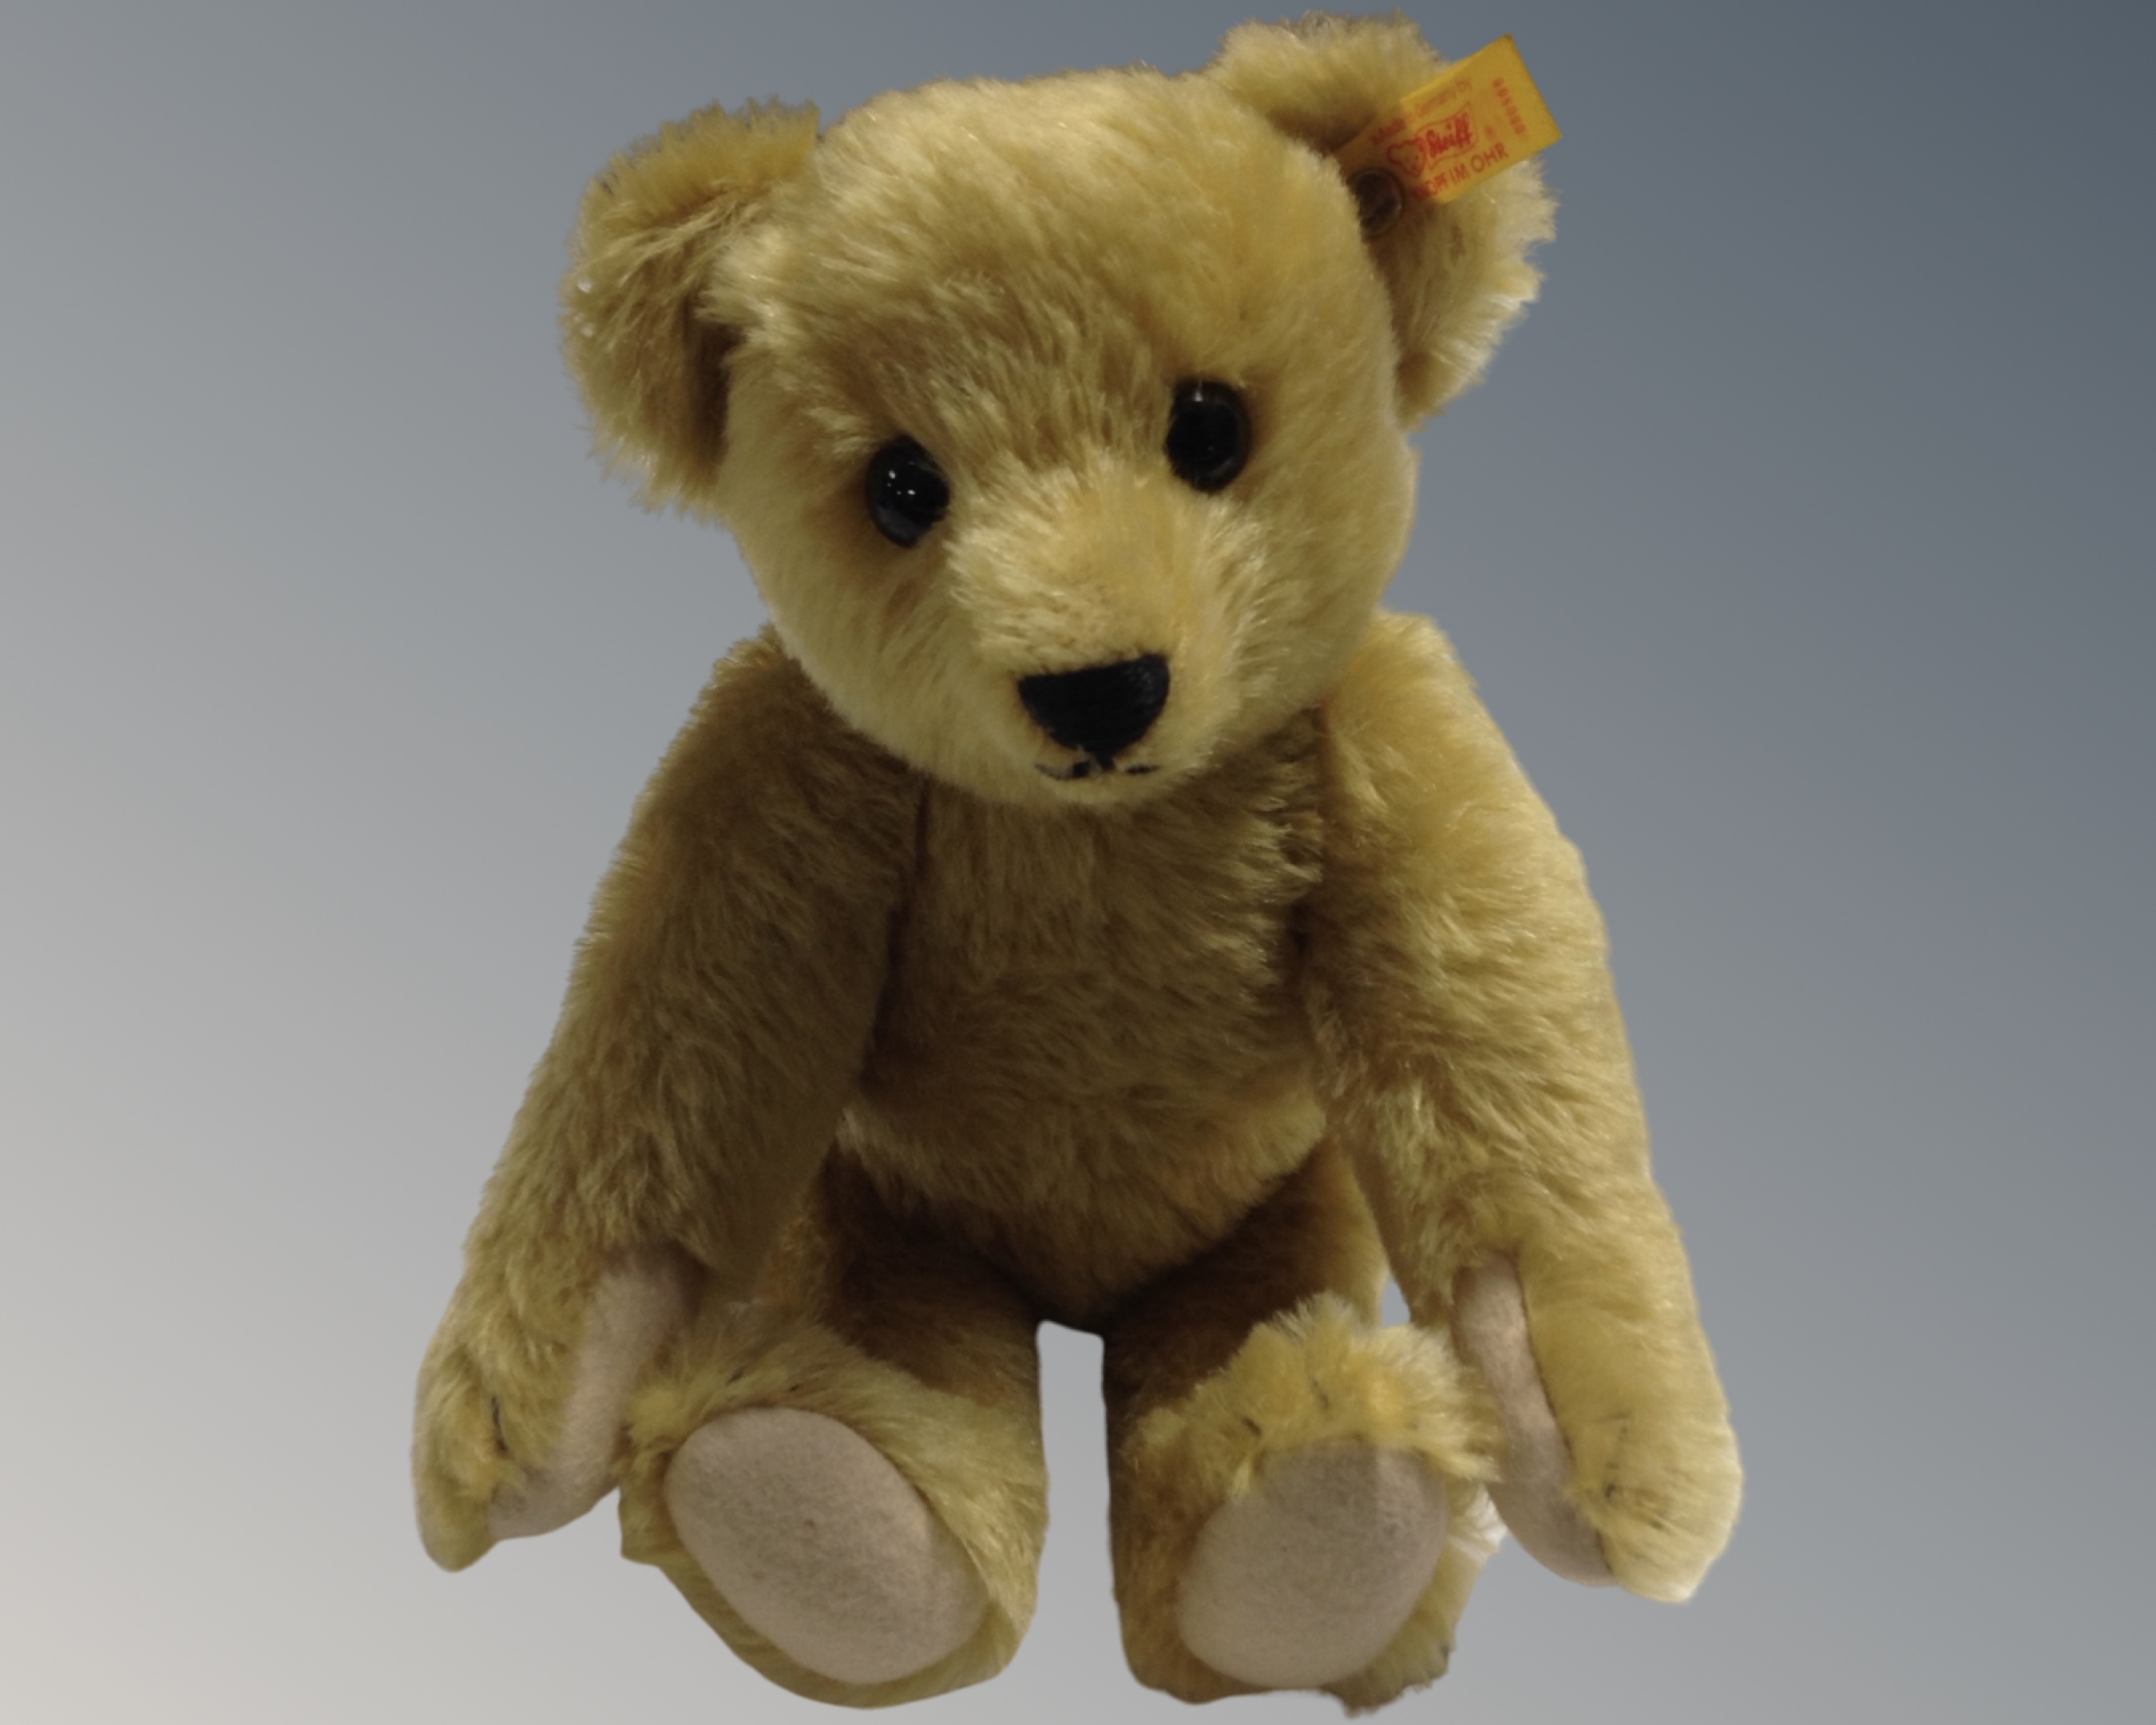 A Steiff teddy bear with growler